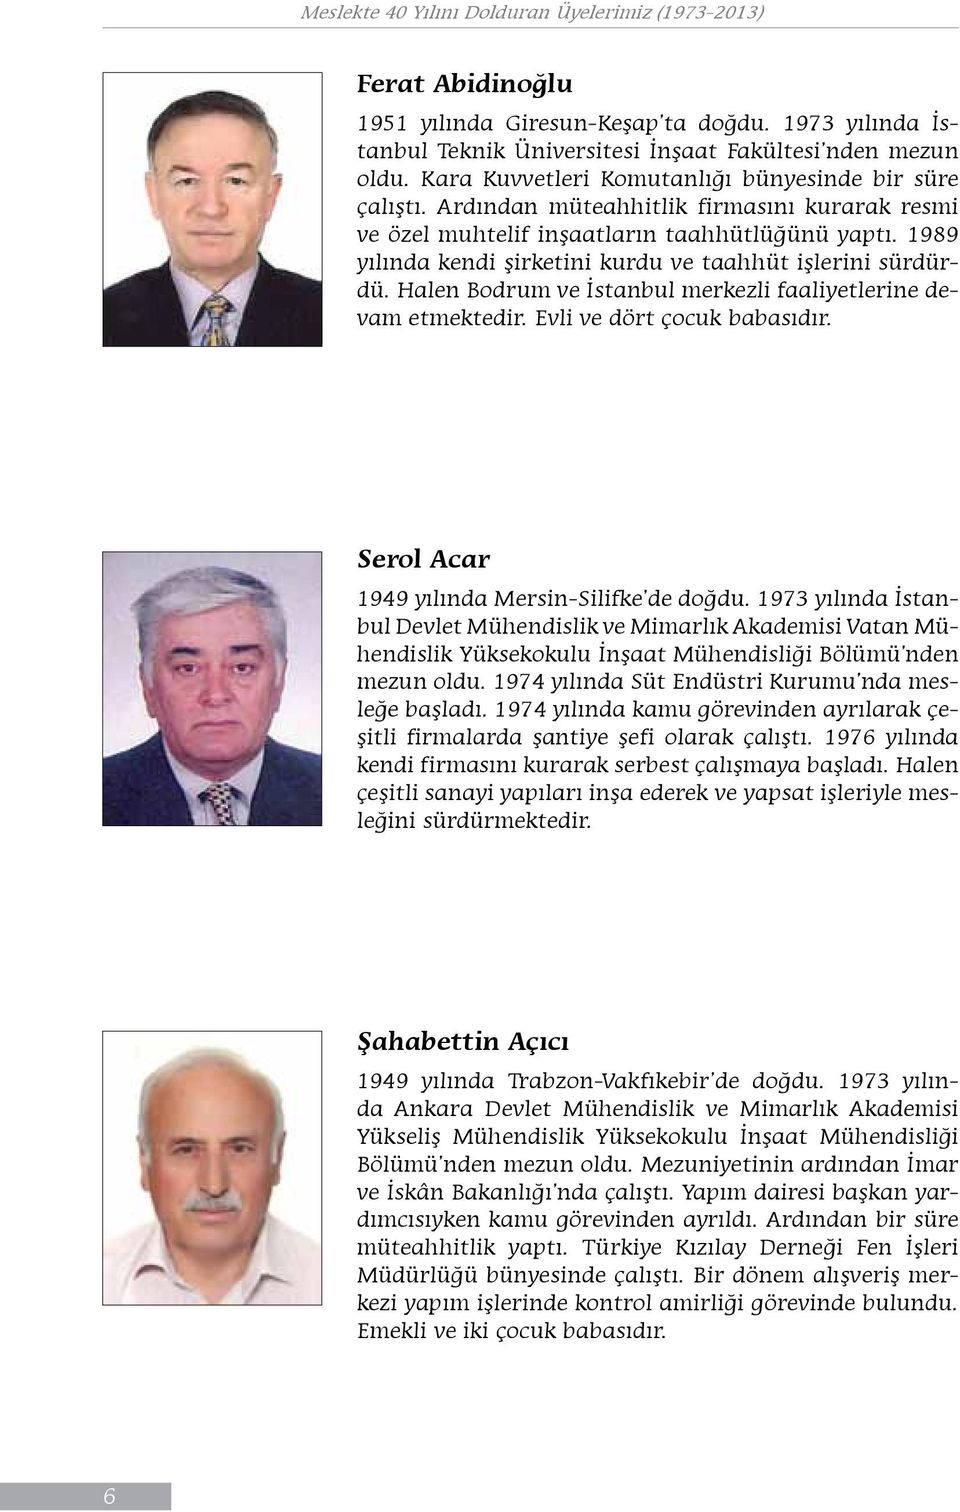 Halen Bodrum ve İstanbul merkezli faaliyetlerine devam etmektedir. Evli ve dört çocuk babasıdır. Serol Acar 1949 yılında Mersin-Silifke de doğdu.